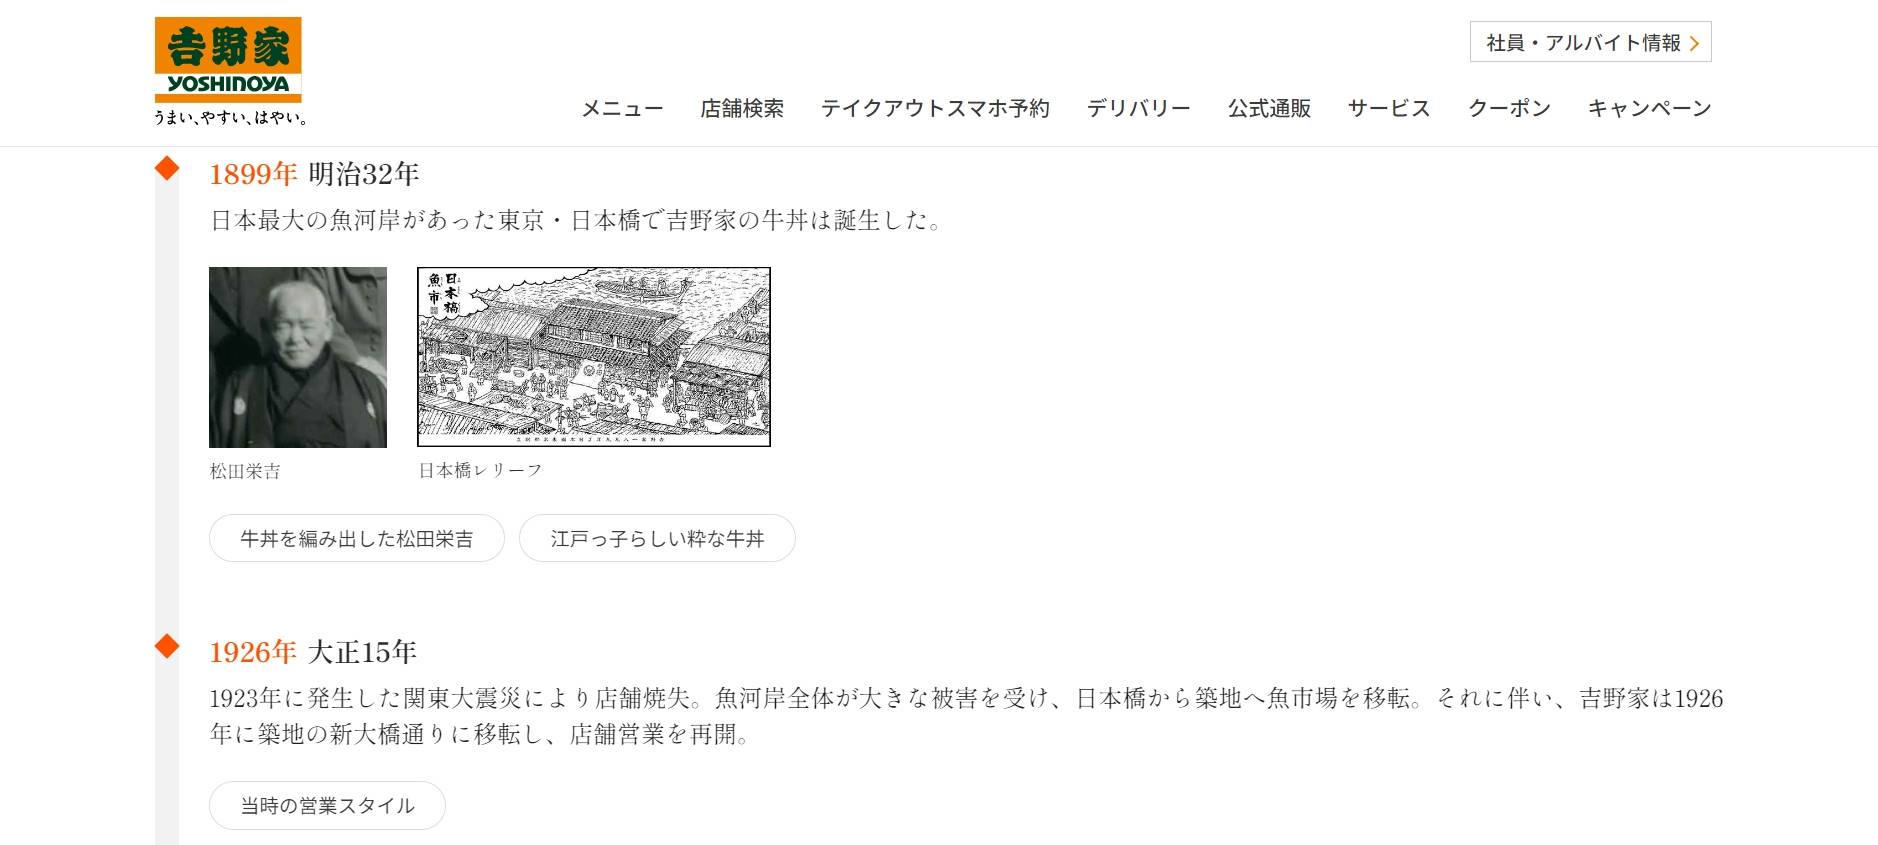 「吉野家」於1899年創立於日本橋